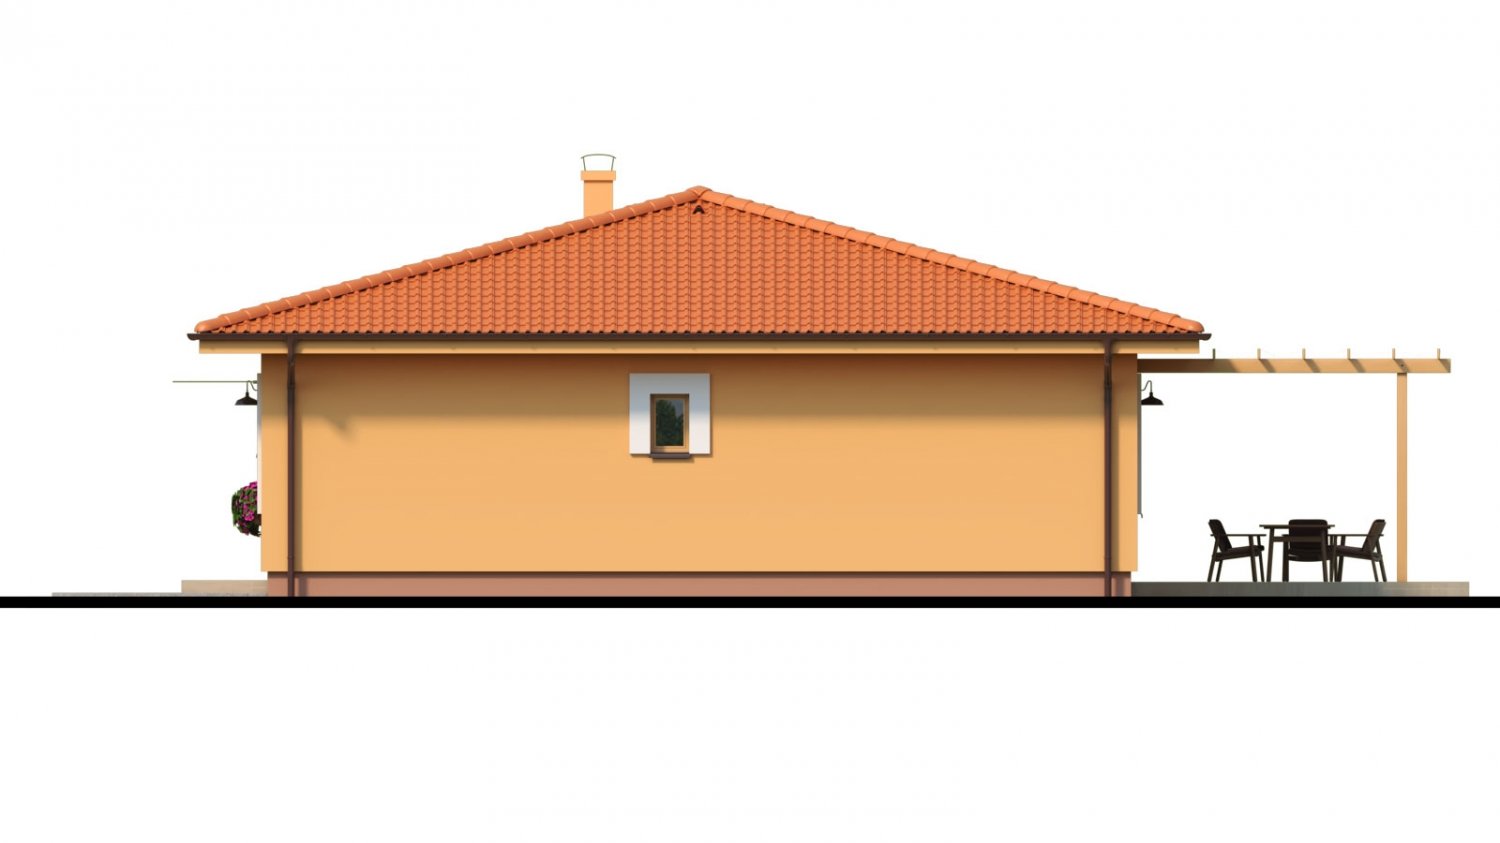 Zrkadlový pohľad 2. - Moderní zděný bungalov s valbovou střechou a oddělenou denní a noční částí, s možností zrealizovat plochou střechu.